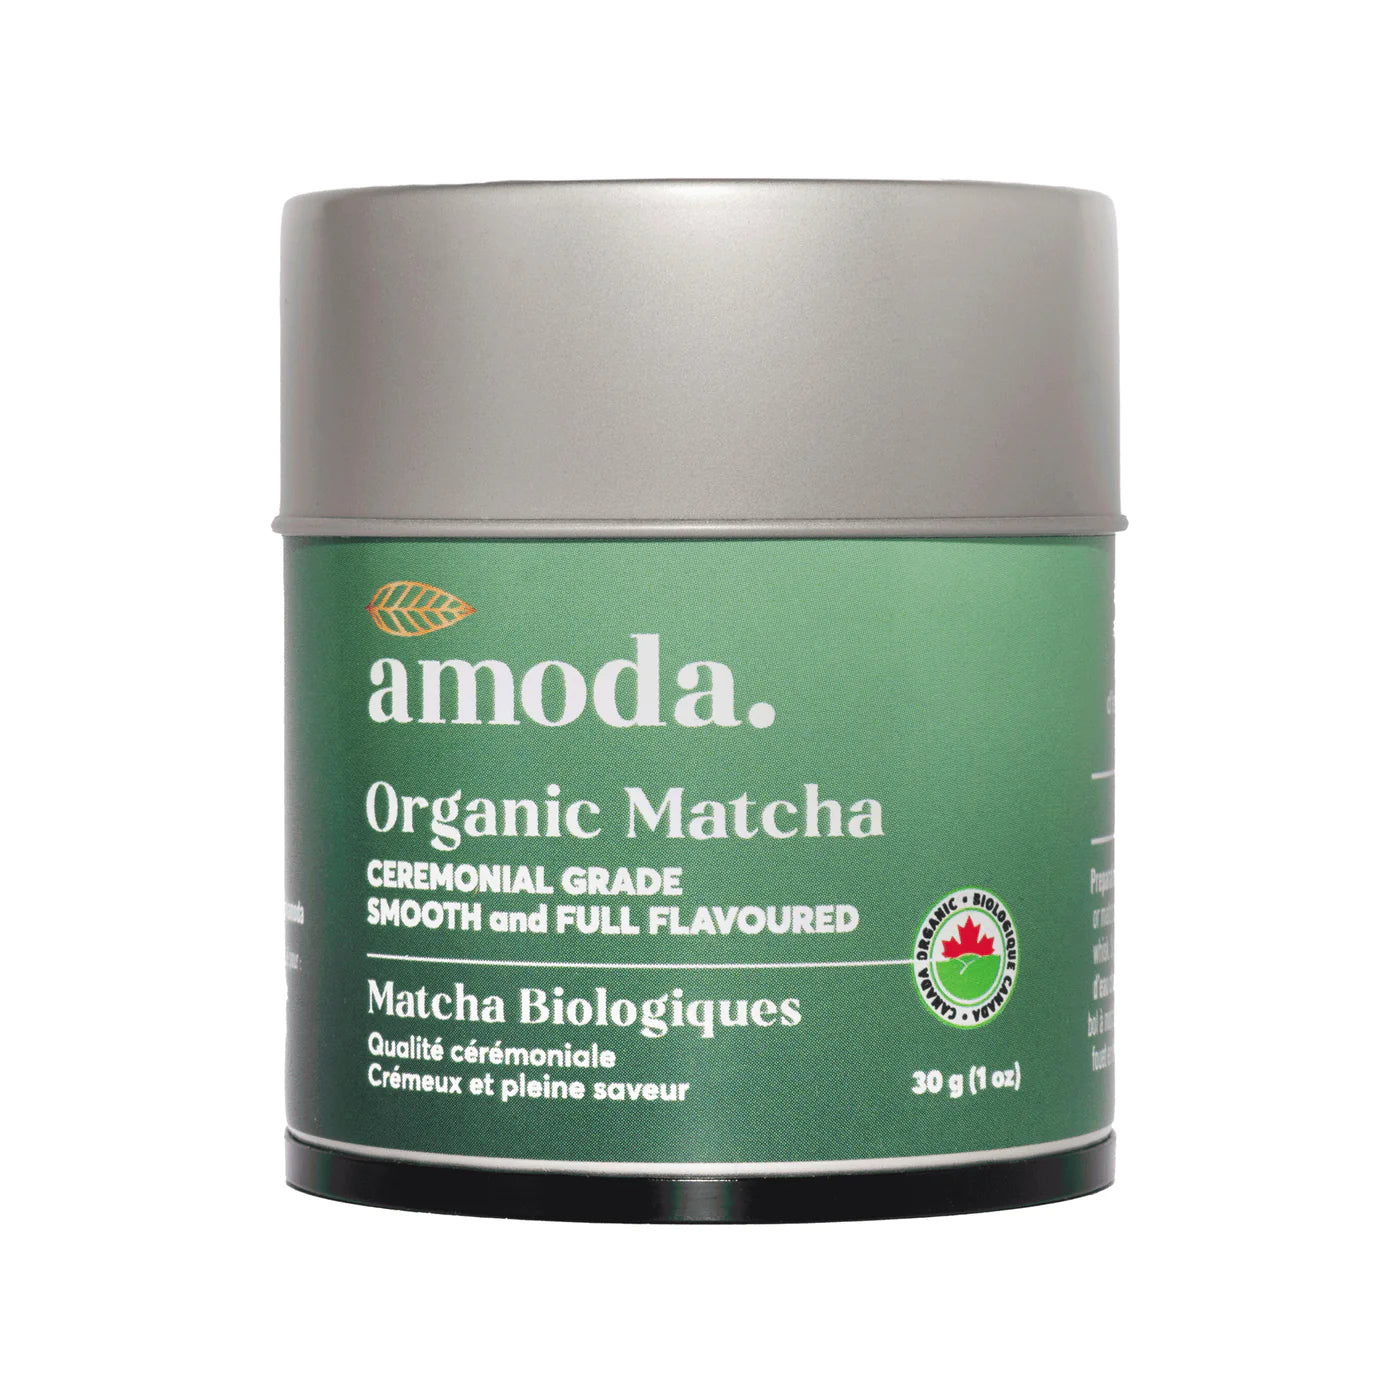 Organic Matcha by amoda, 30g